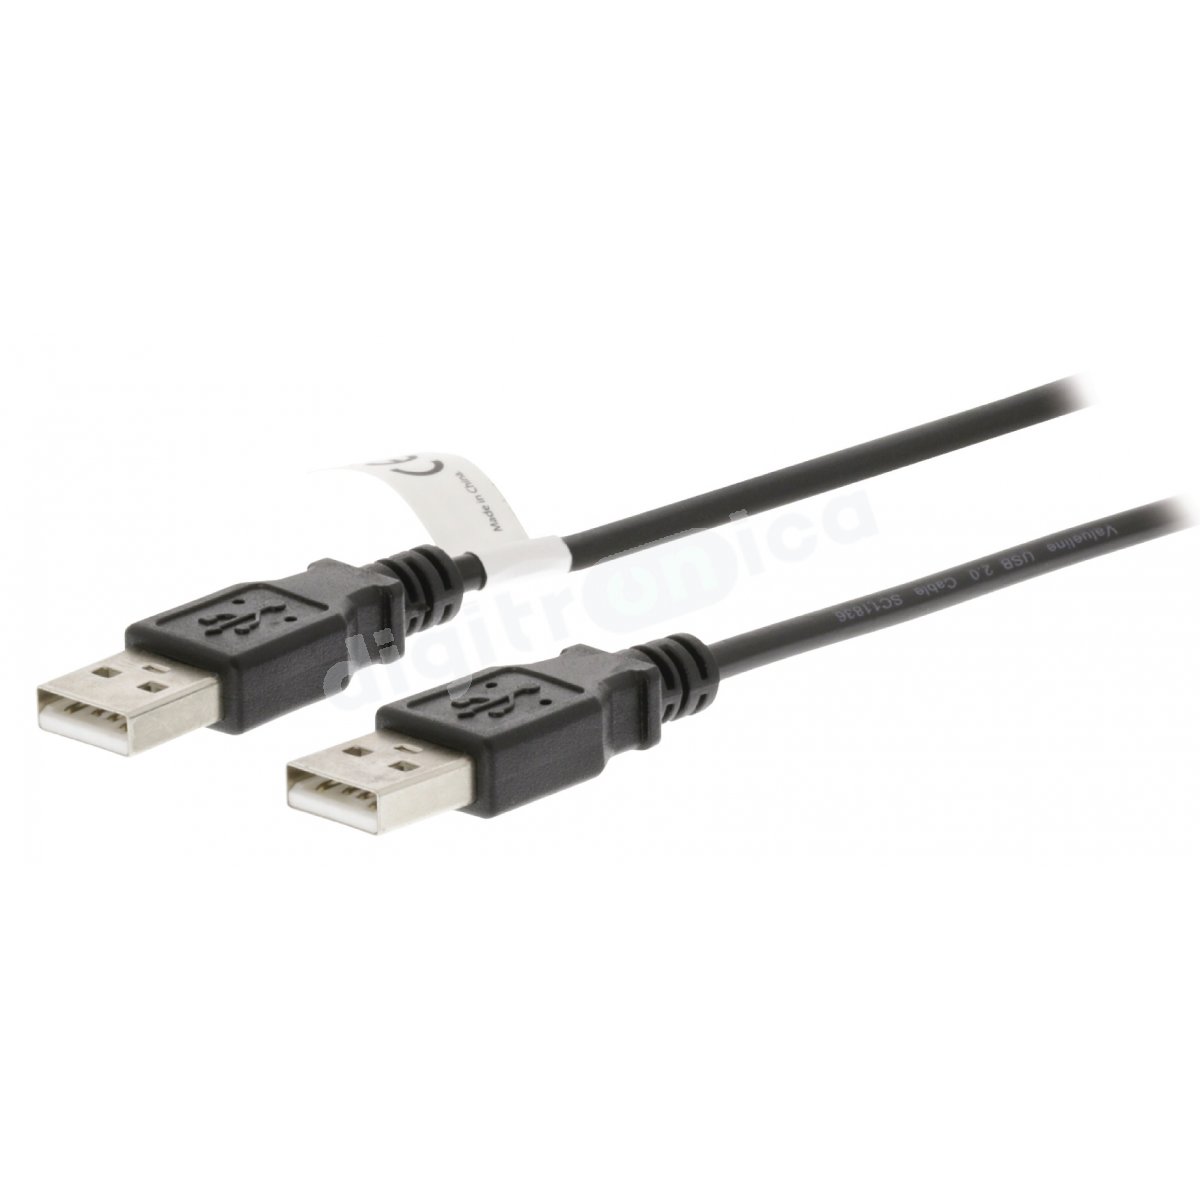 CABLE USB A/M - USB A/M 2M